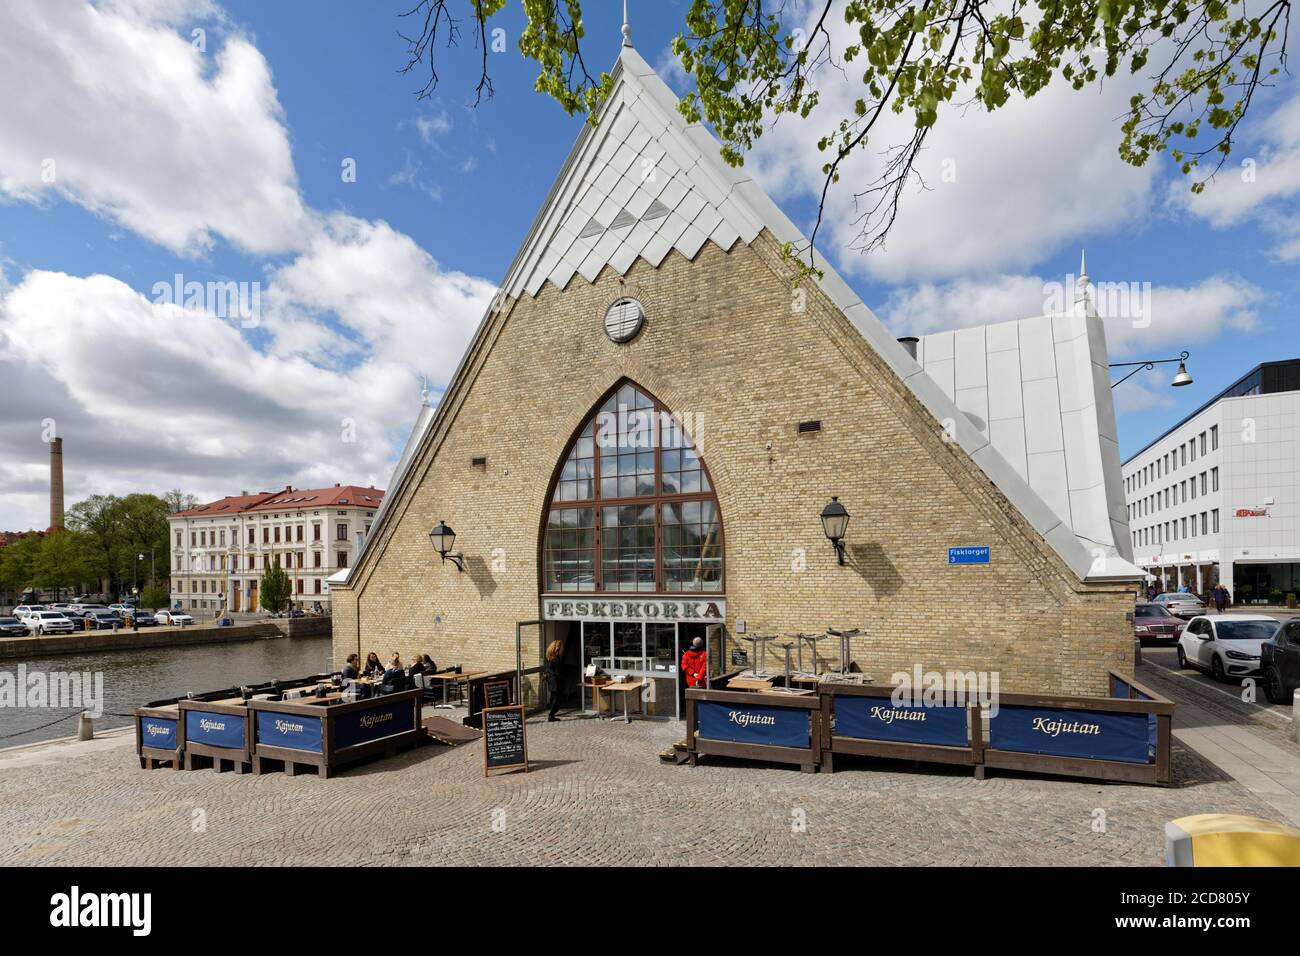 Feskekorka, église de poissons de Göteborg, Suède Banque D'Images